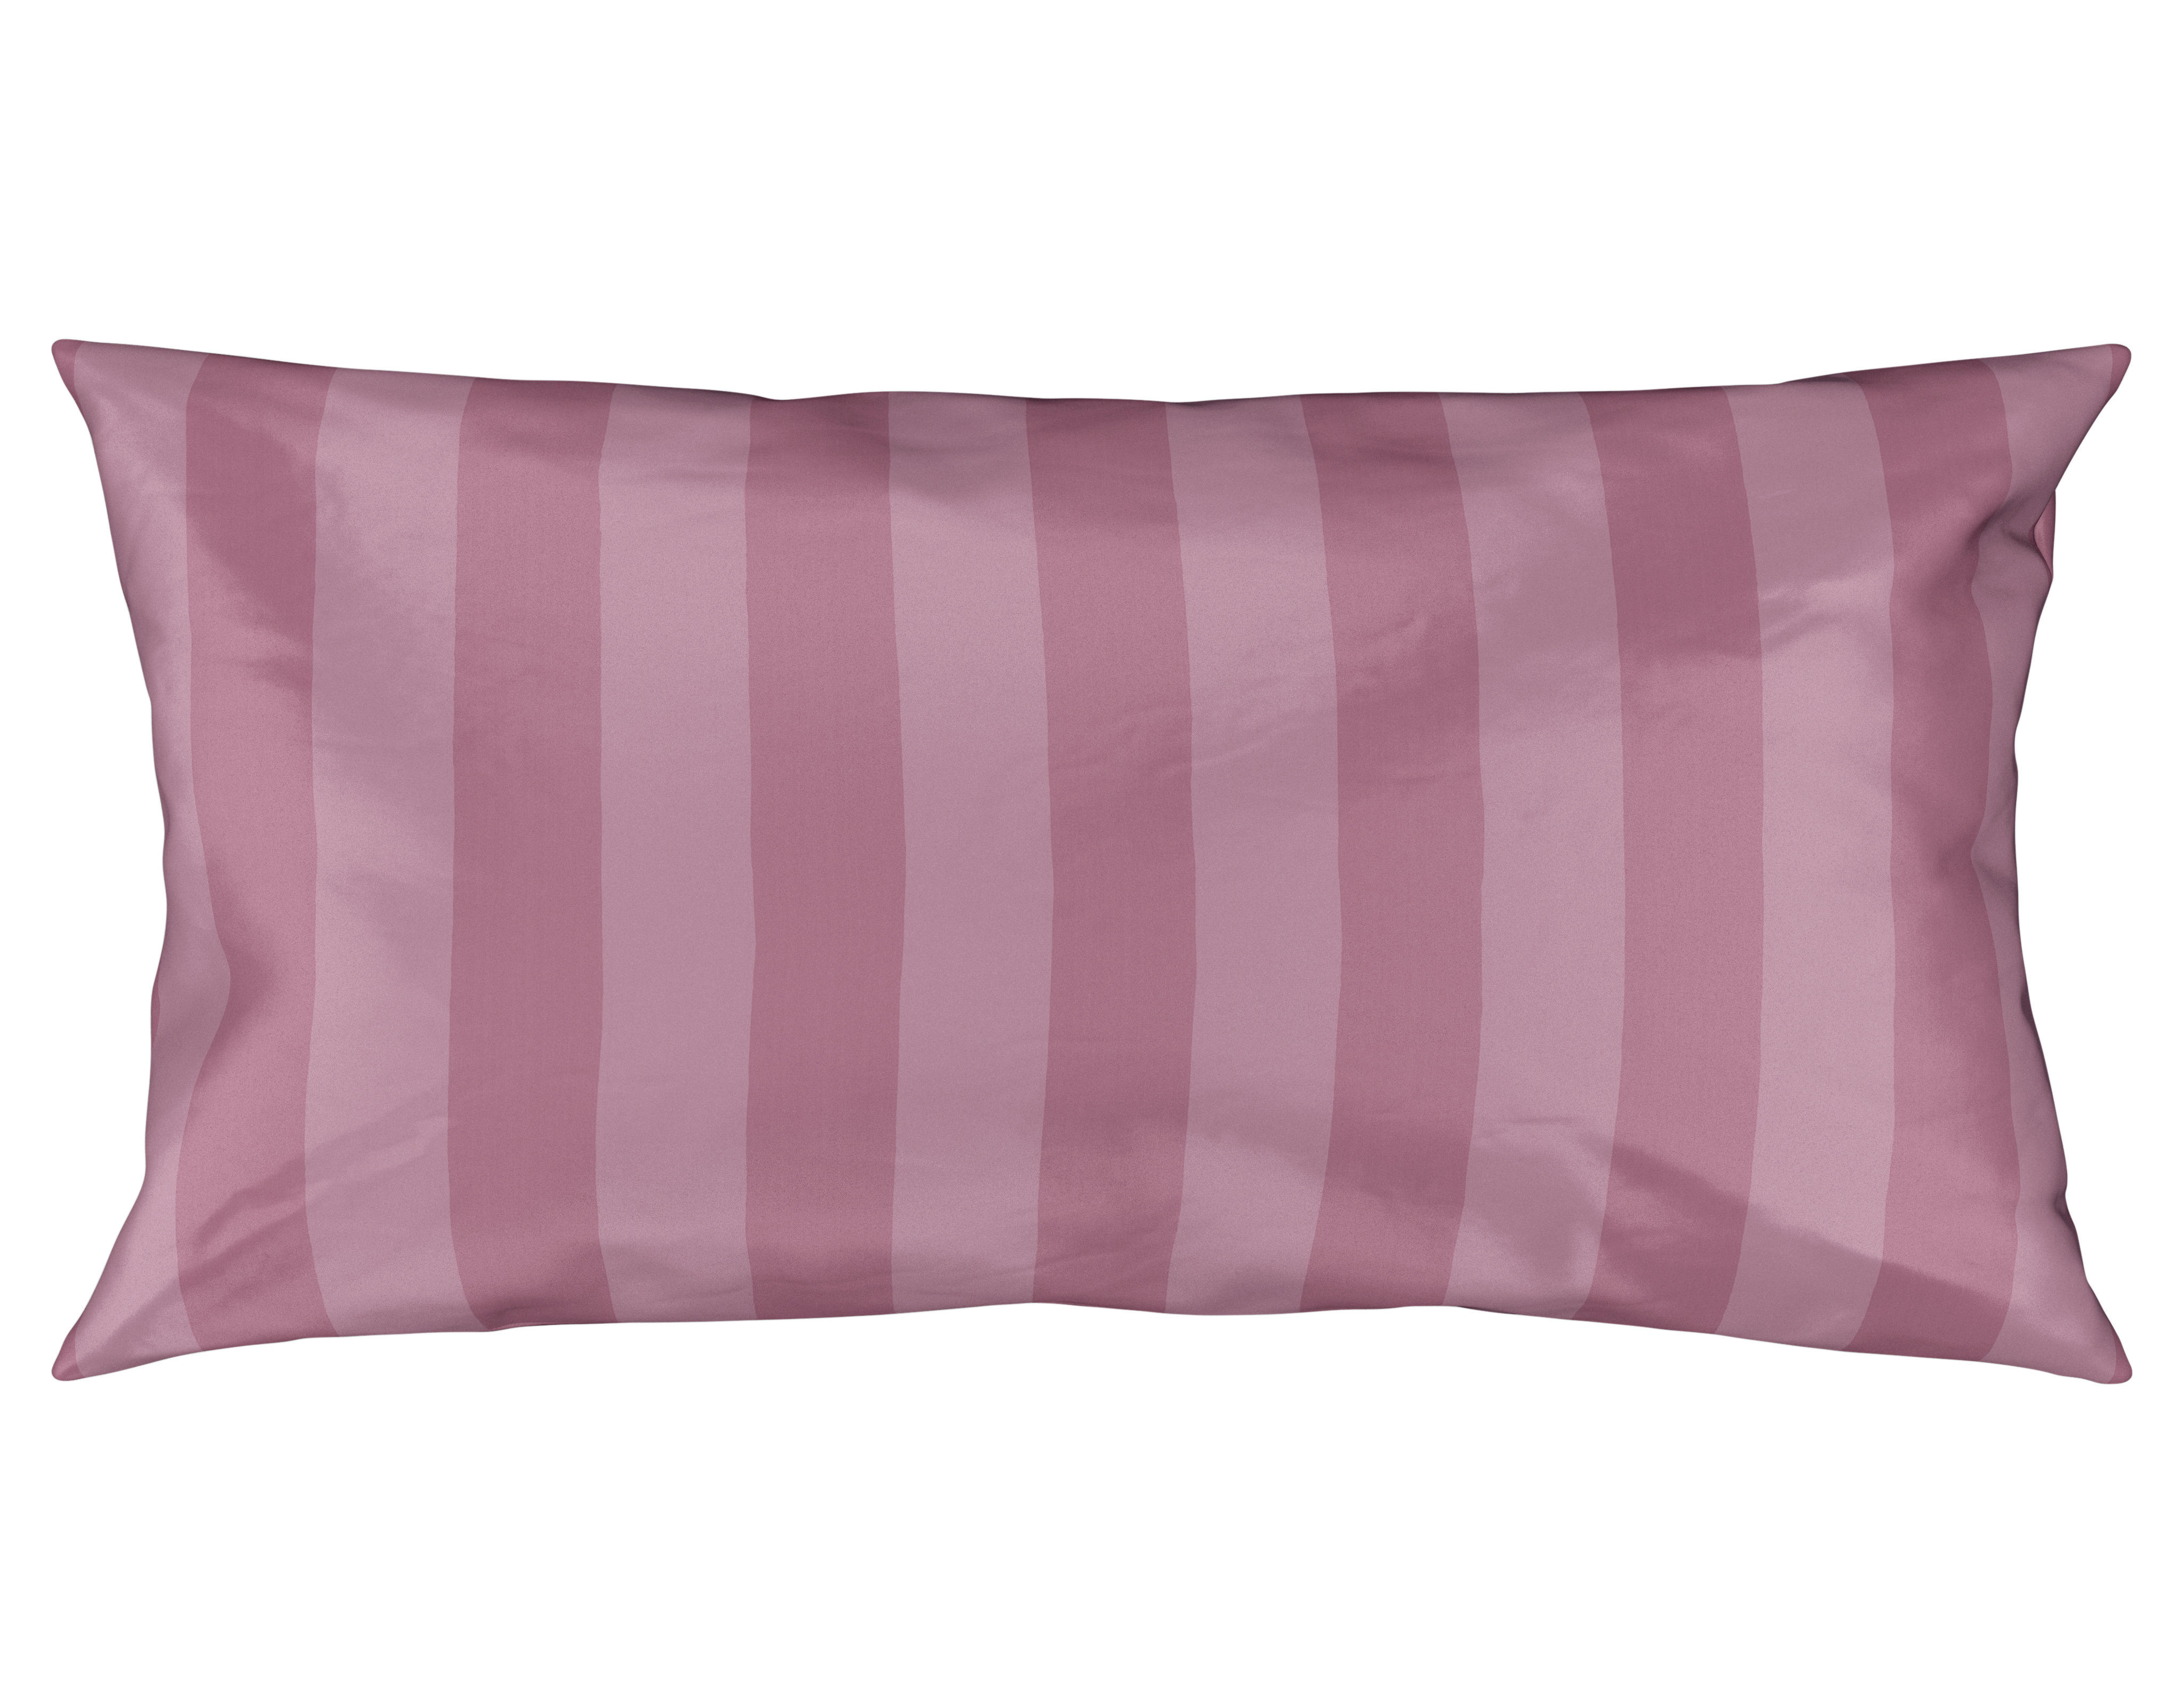 KISSENHÜLLEN-SET 40/80 cm  - Pink, KONVENTIONELL, Textil (40/80cm) - Ambiente